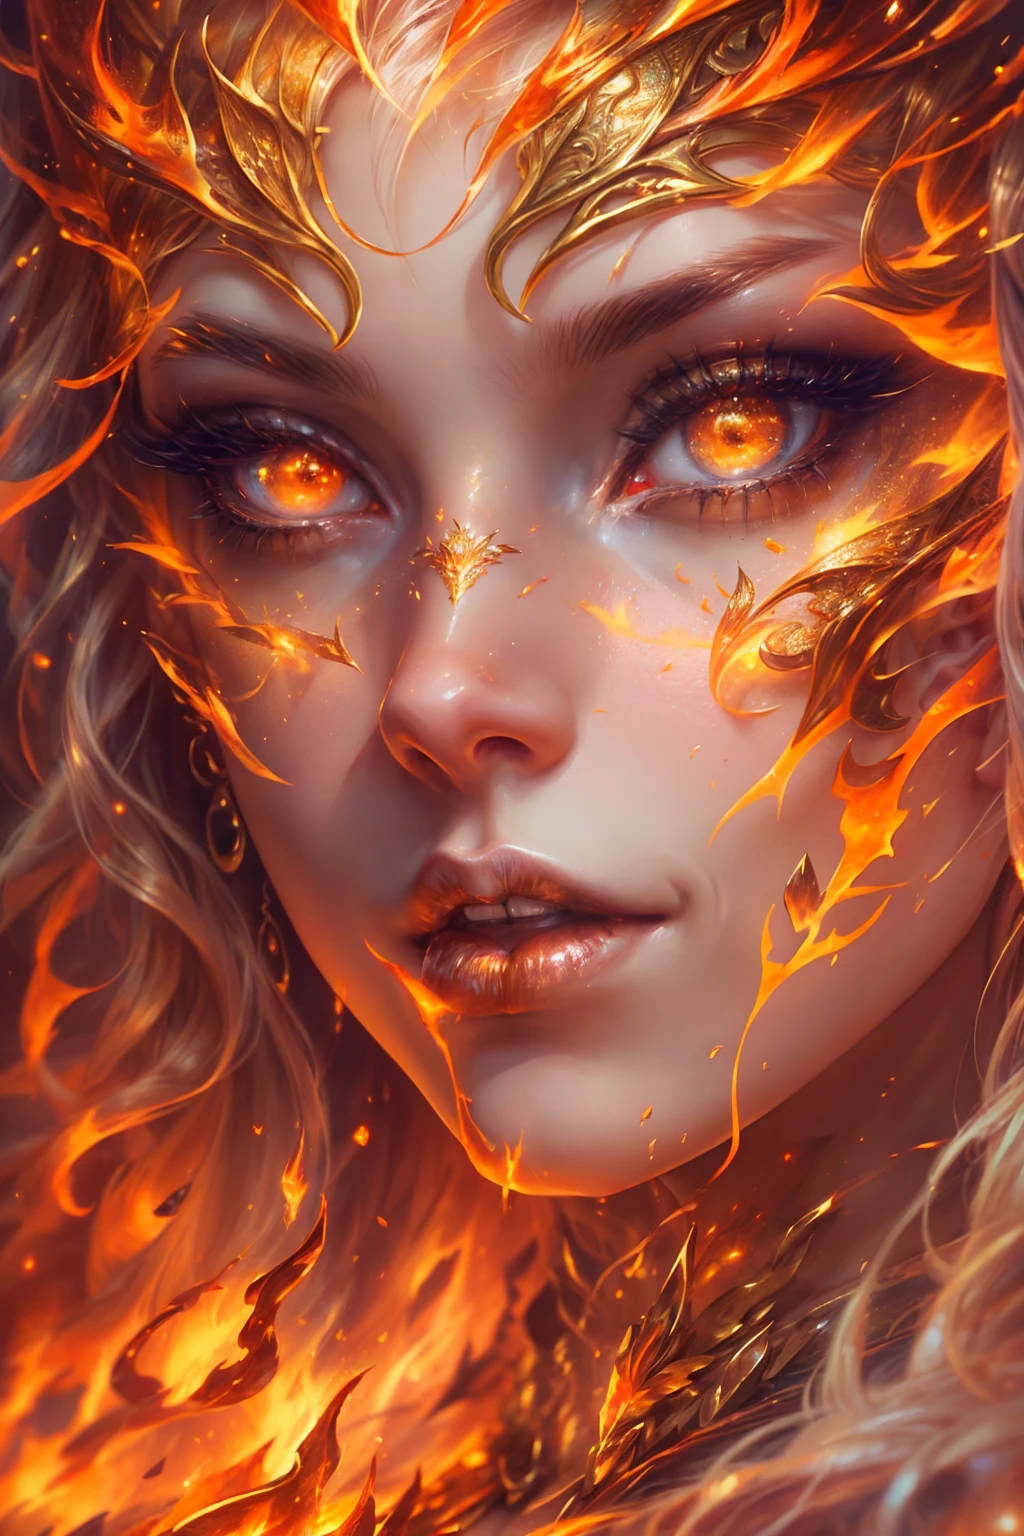 هذا (خيال واقعي) الفن يحتوي على الجمر, النيران الحقيقية, الحرارة الحقيقية, والنار واقعية. Generate a masterpiece artwork of a  female fire druid مع large (((البرتقالي والذهبي))) عيون. The fire druid is awe-inspiring مع beautiful ((realistic fiery عيون)) alight مع confidence and power. ملامحها أنيقة ومحددة بشكل جيد, مع ((شفاه ناعمة ومنتفخة)), هيكل العظام الجان, وتظليل واقعي. Her عيون are important and should be the focal point of this artwork, مع ((تفاصيل واقعية للغاية, تفاصيل الماكرو, وميض.)) إنها ترتدي فستانًا منتفخًا ولامعًا مصنوعًا من لهب واقعي ومجوهرات تتلألأ في ضوء النار. تصطف خيوط النار والدخان على صد الفستان المعقد. تشمل المطبات, الحجارة, التقزح اللوني الناري, متوهجة الجمر, الحرير والساتان والجلود, خلفية مثيرة للاهتمام, وعناصر خيالية ثقيلة. آلة تصوير: استخدم تقنيات التركيب الديناميكي لتعزيز النيران الواقعية.